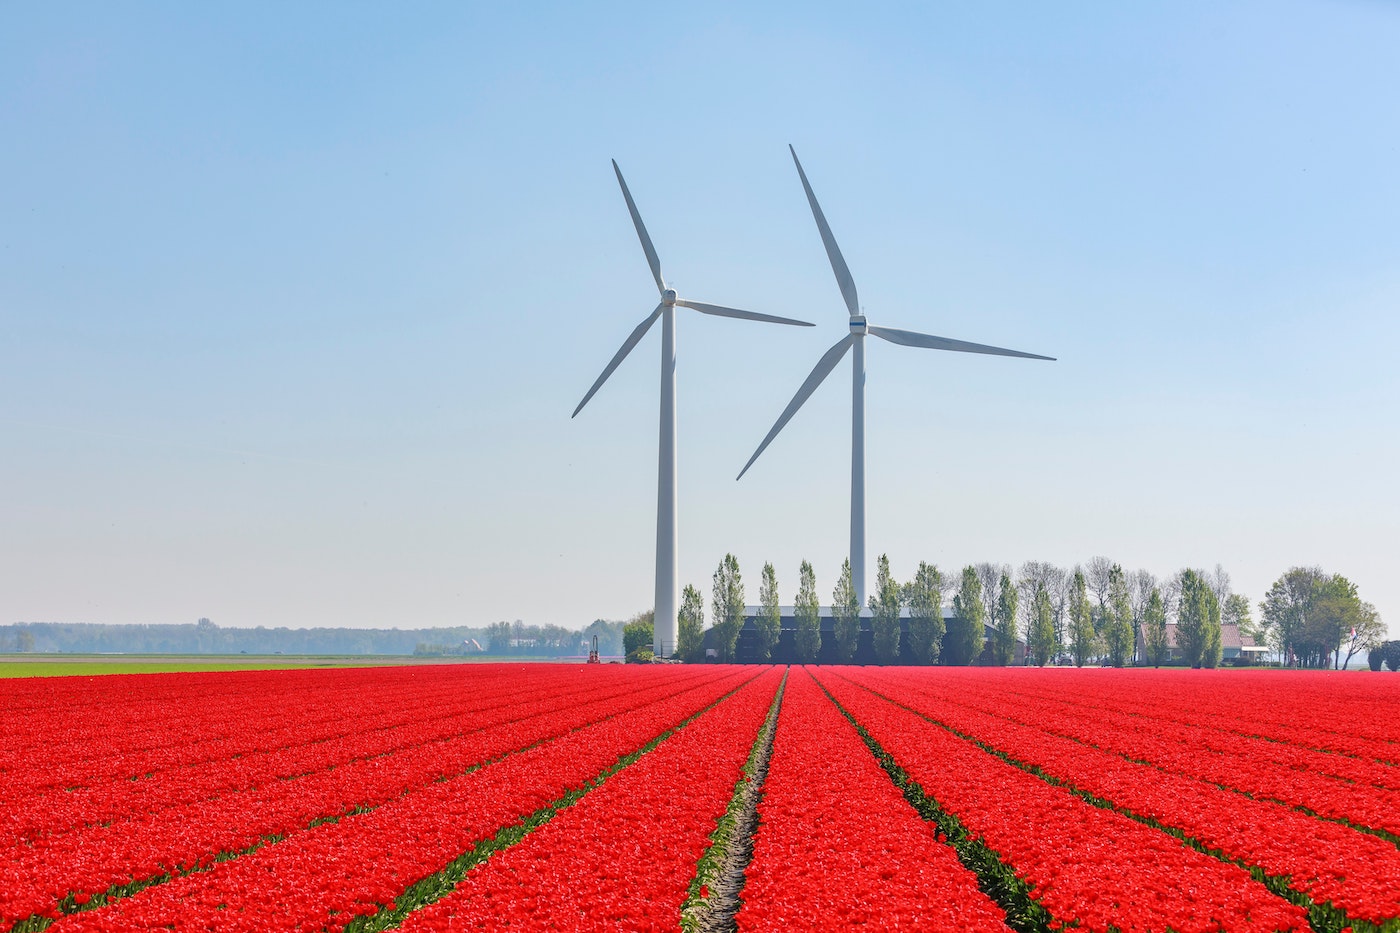 twee windmolens achter een veld vol met rode bloemen